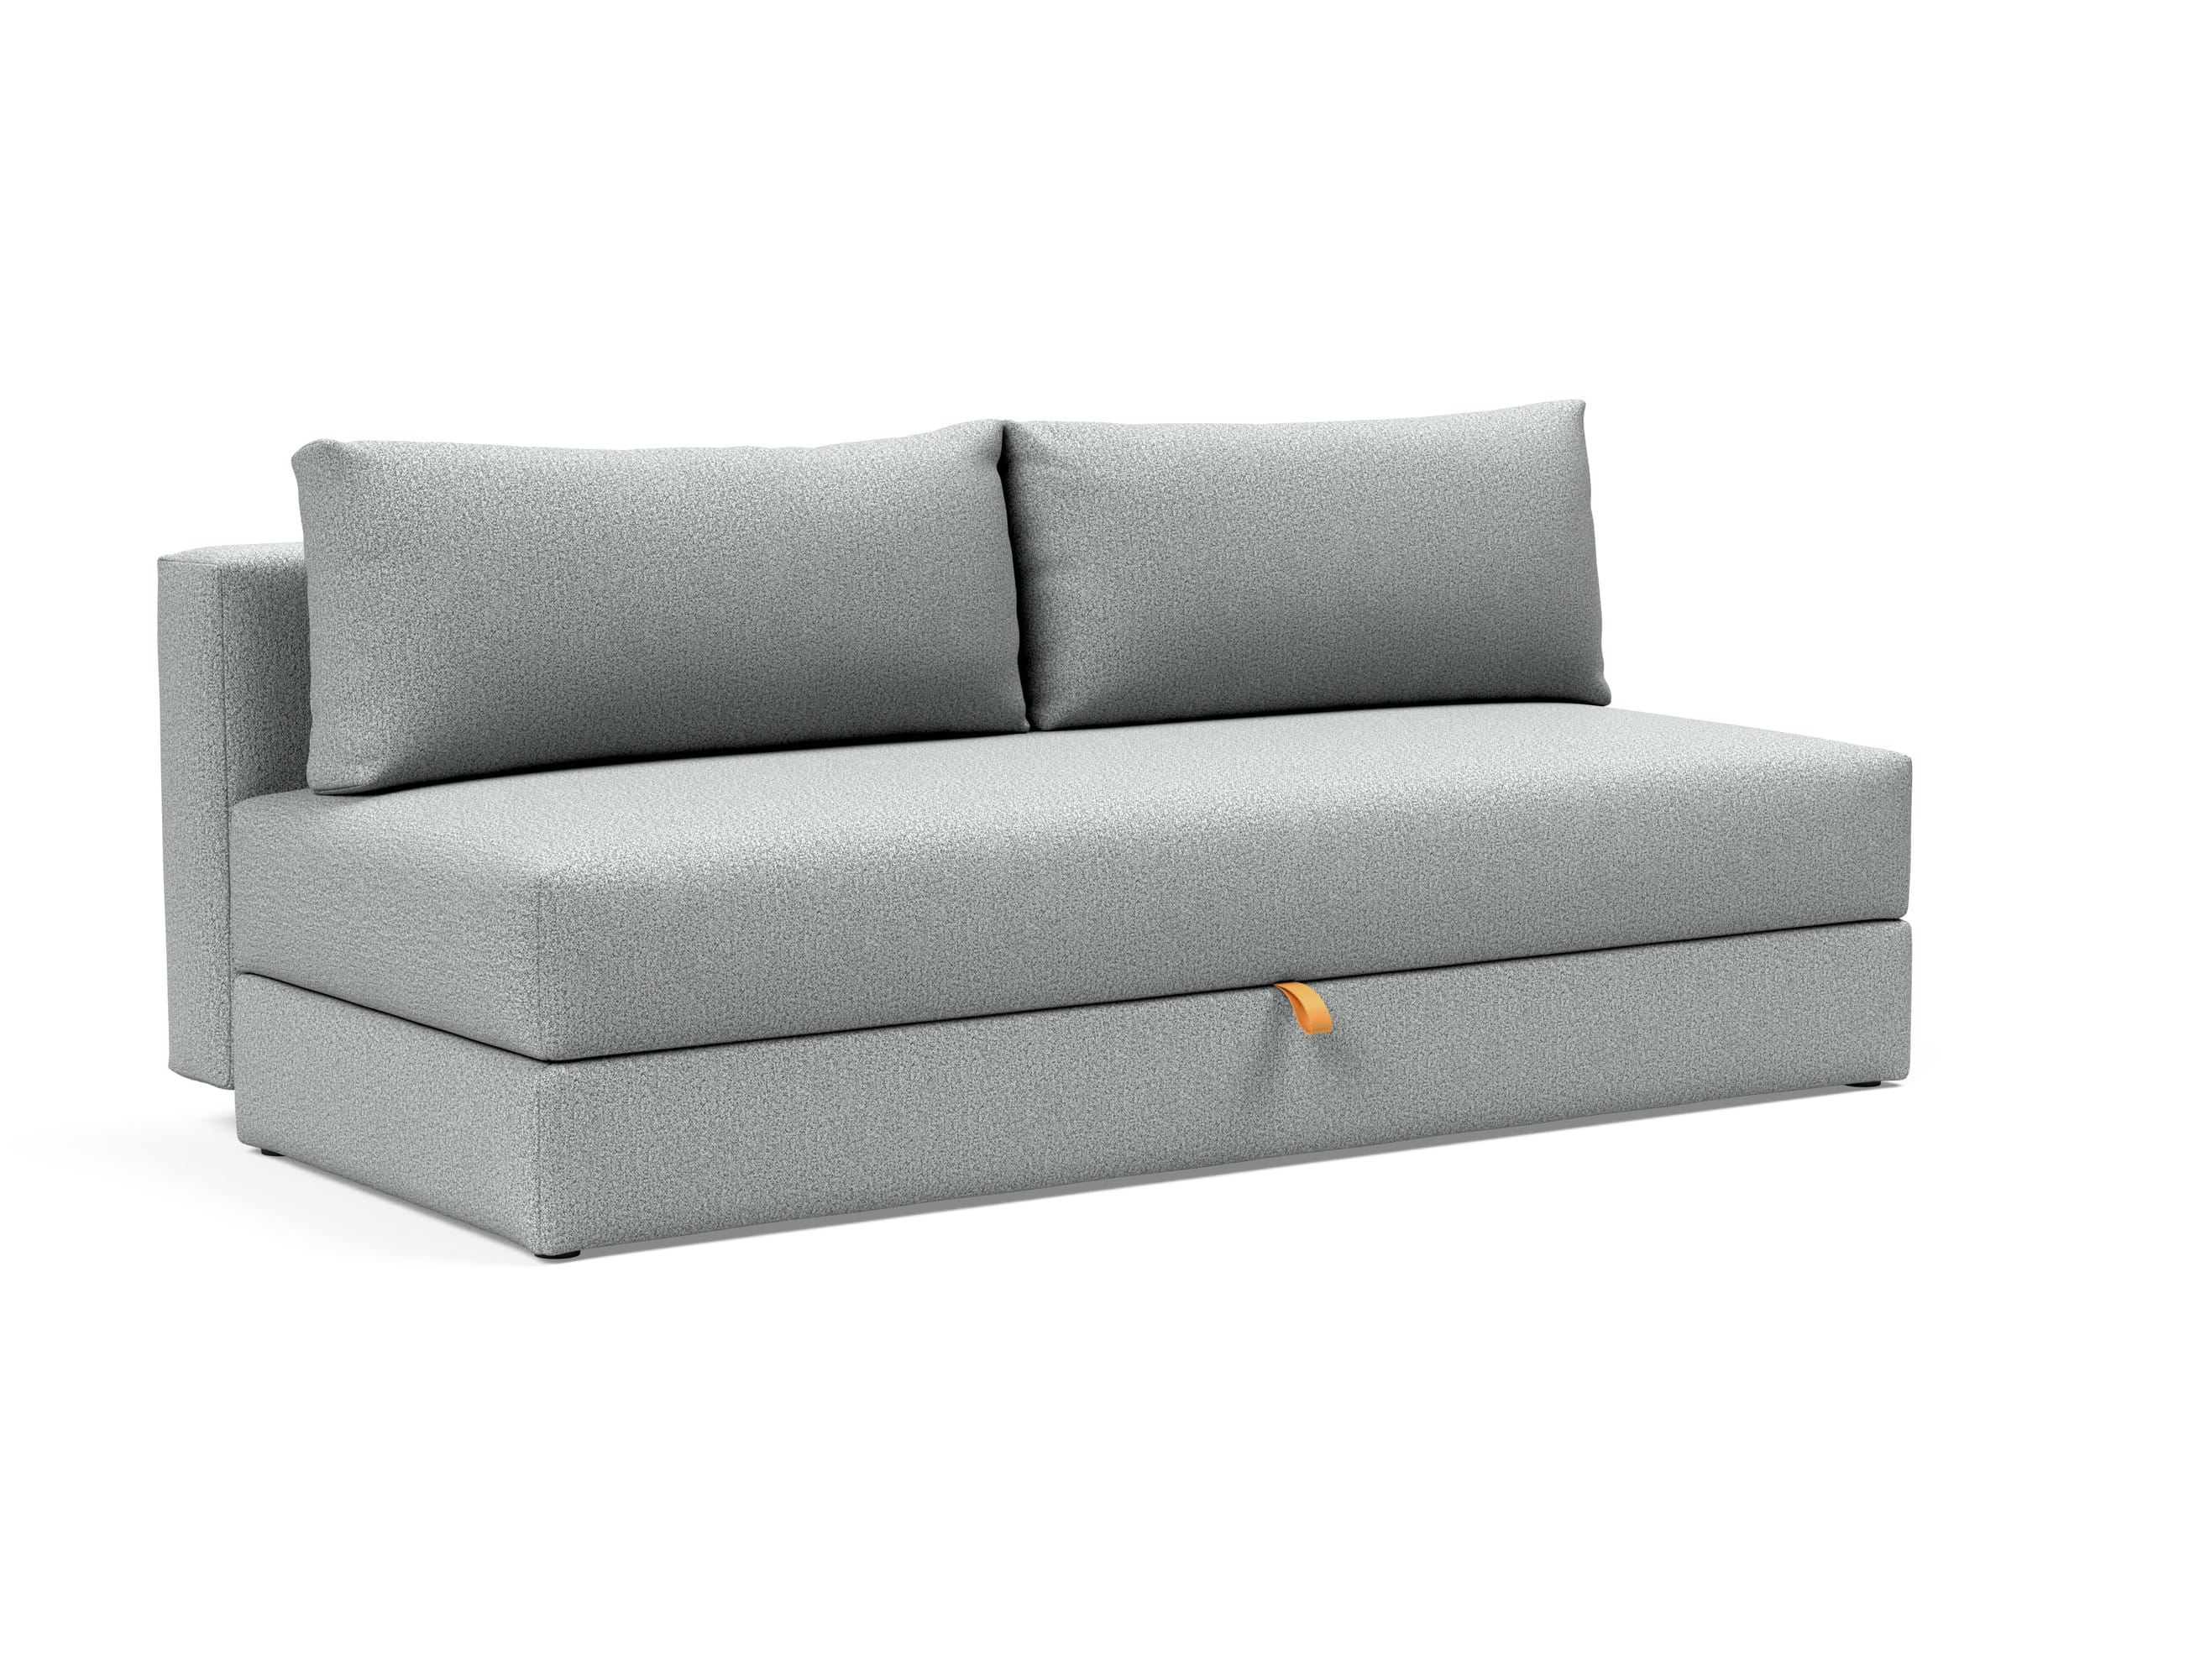 Osvald Sofa Bed (Full Size) Melange Light Gray by Innovation